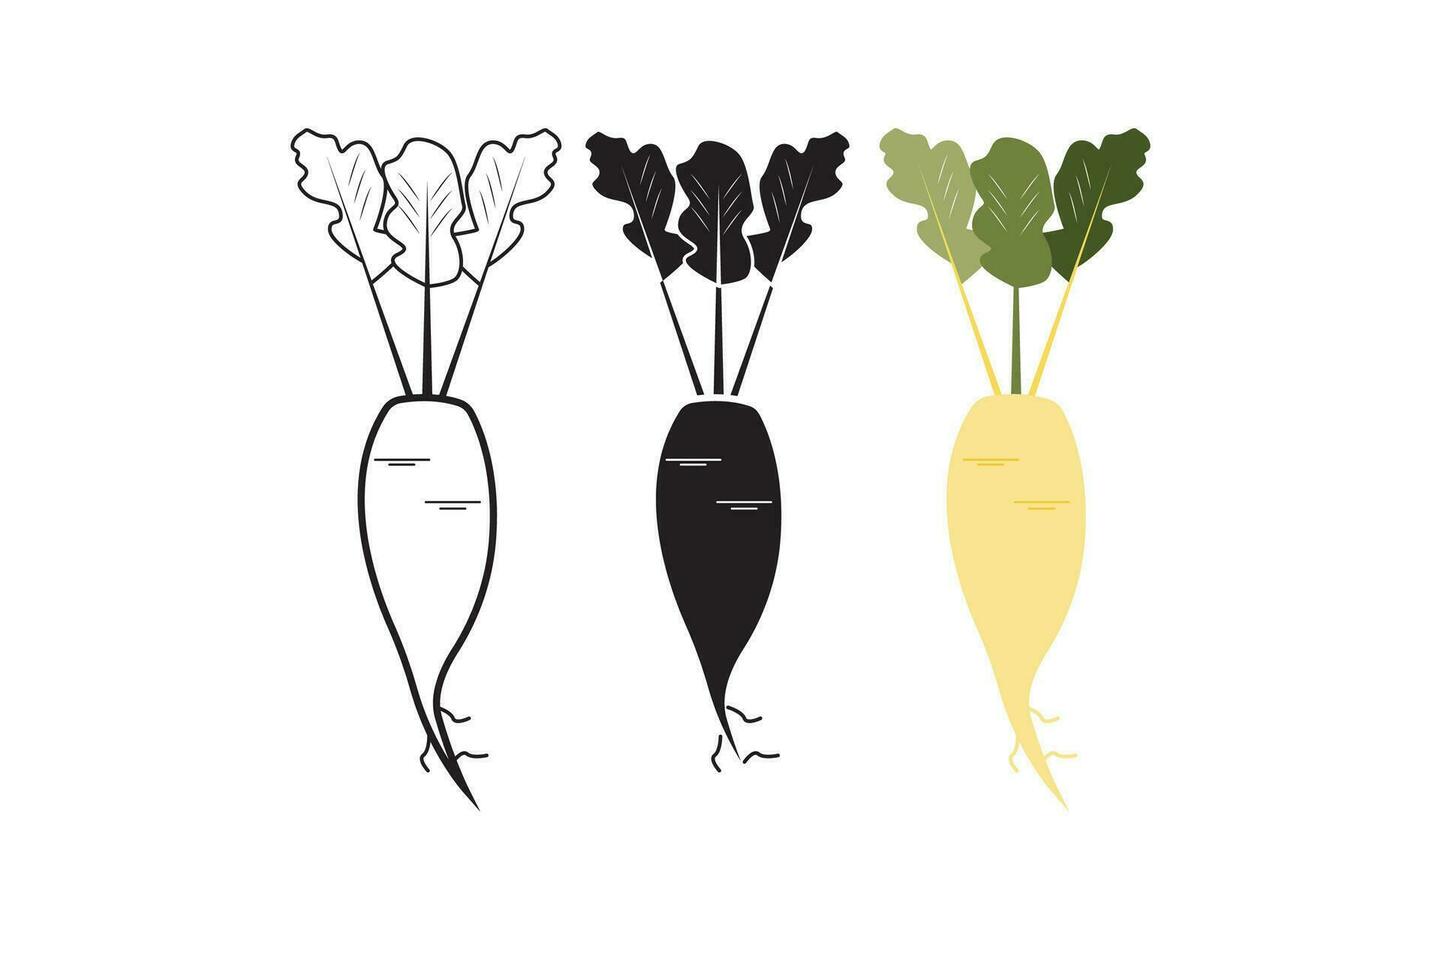 de vektor illustration ställer ut olika rot grönsaker, sådan som beta, rädisa, och rovor, presenteras i färglös, svart och vit, linje, och fylld stilar med en enkel design.